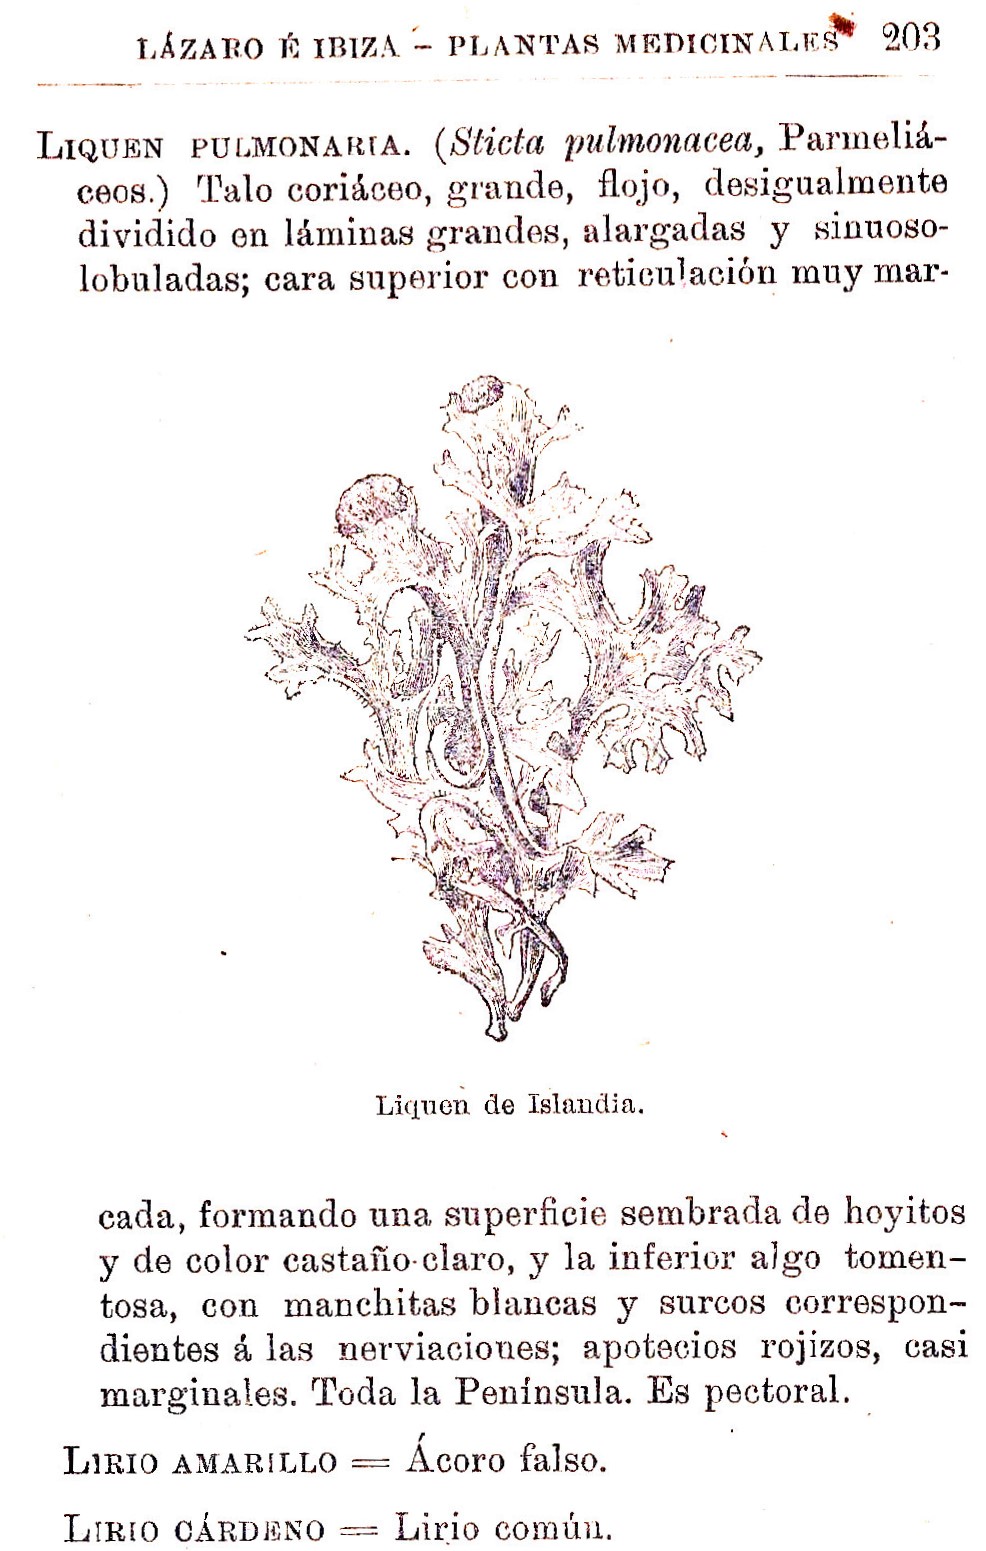 Plantas Medicinales. Blas Lazaro Ibiza. Índice alfabético de plantas. L. Liquen pulmonaria.